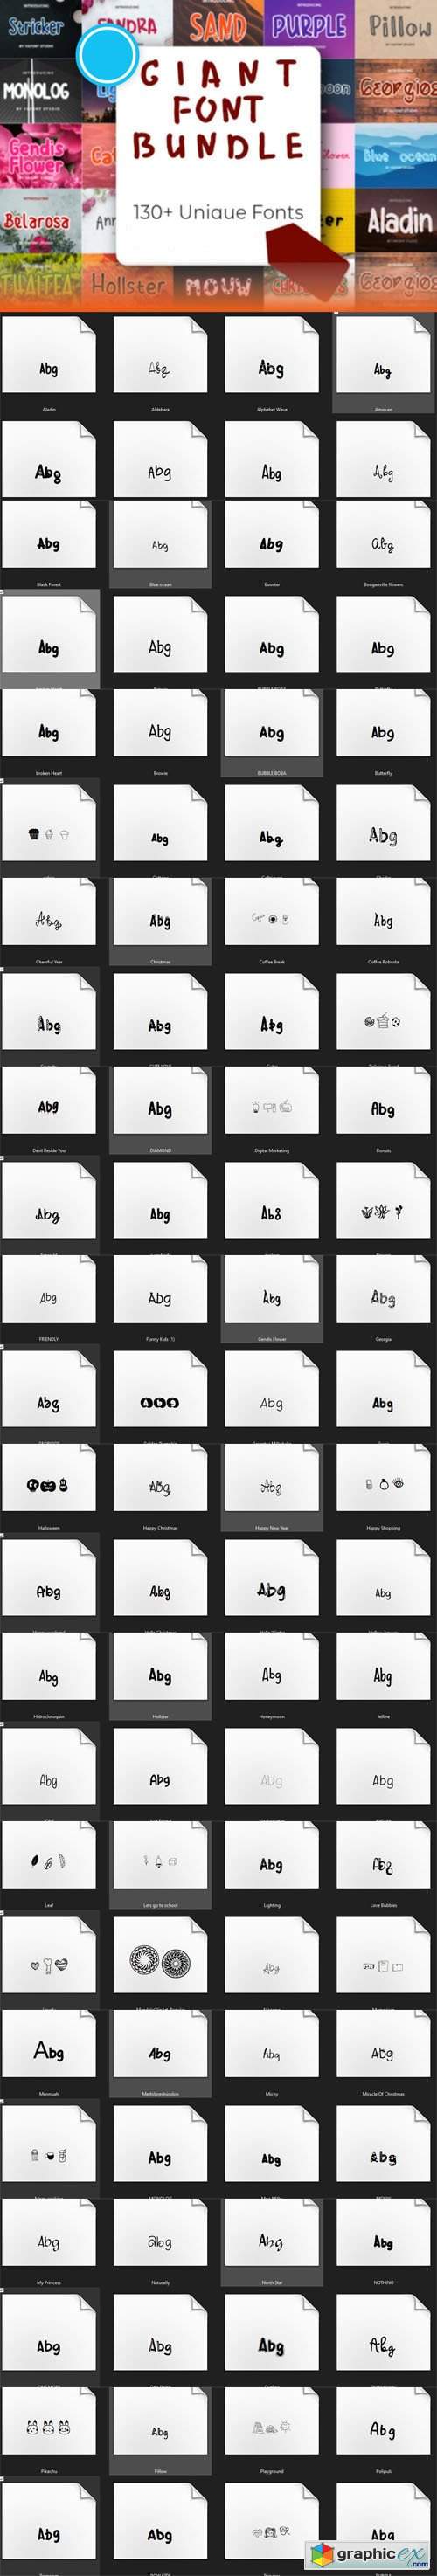  Giant Font Bundle - 130+ Unique Fonts 